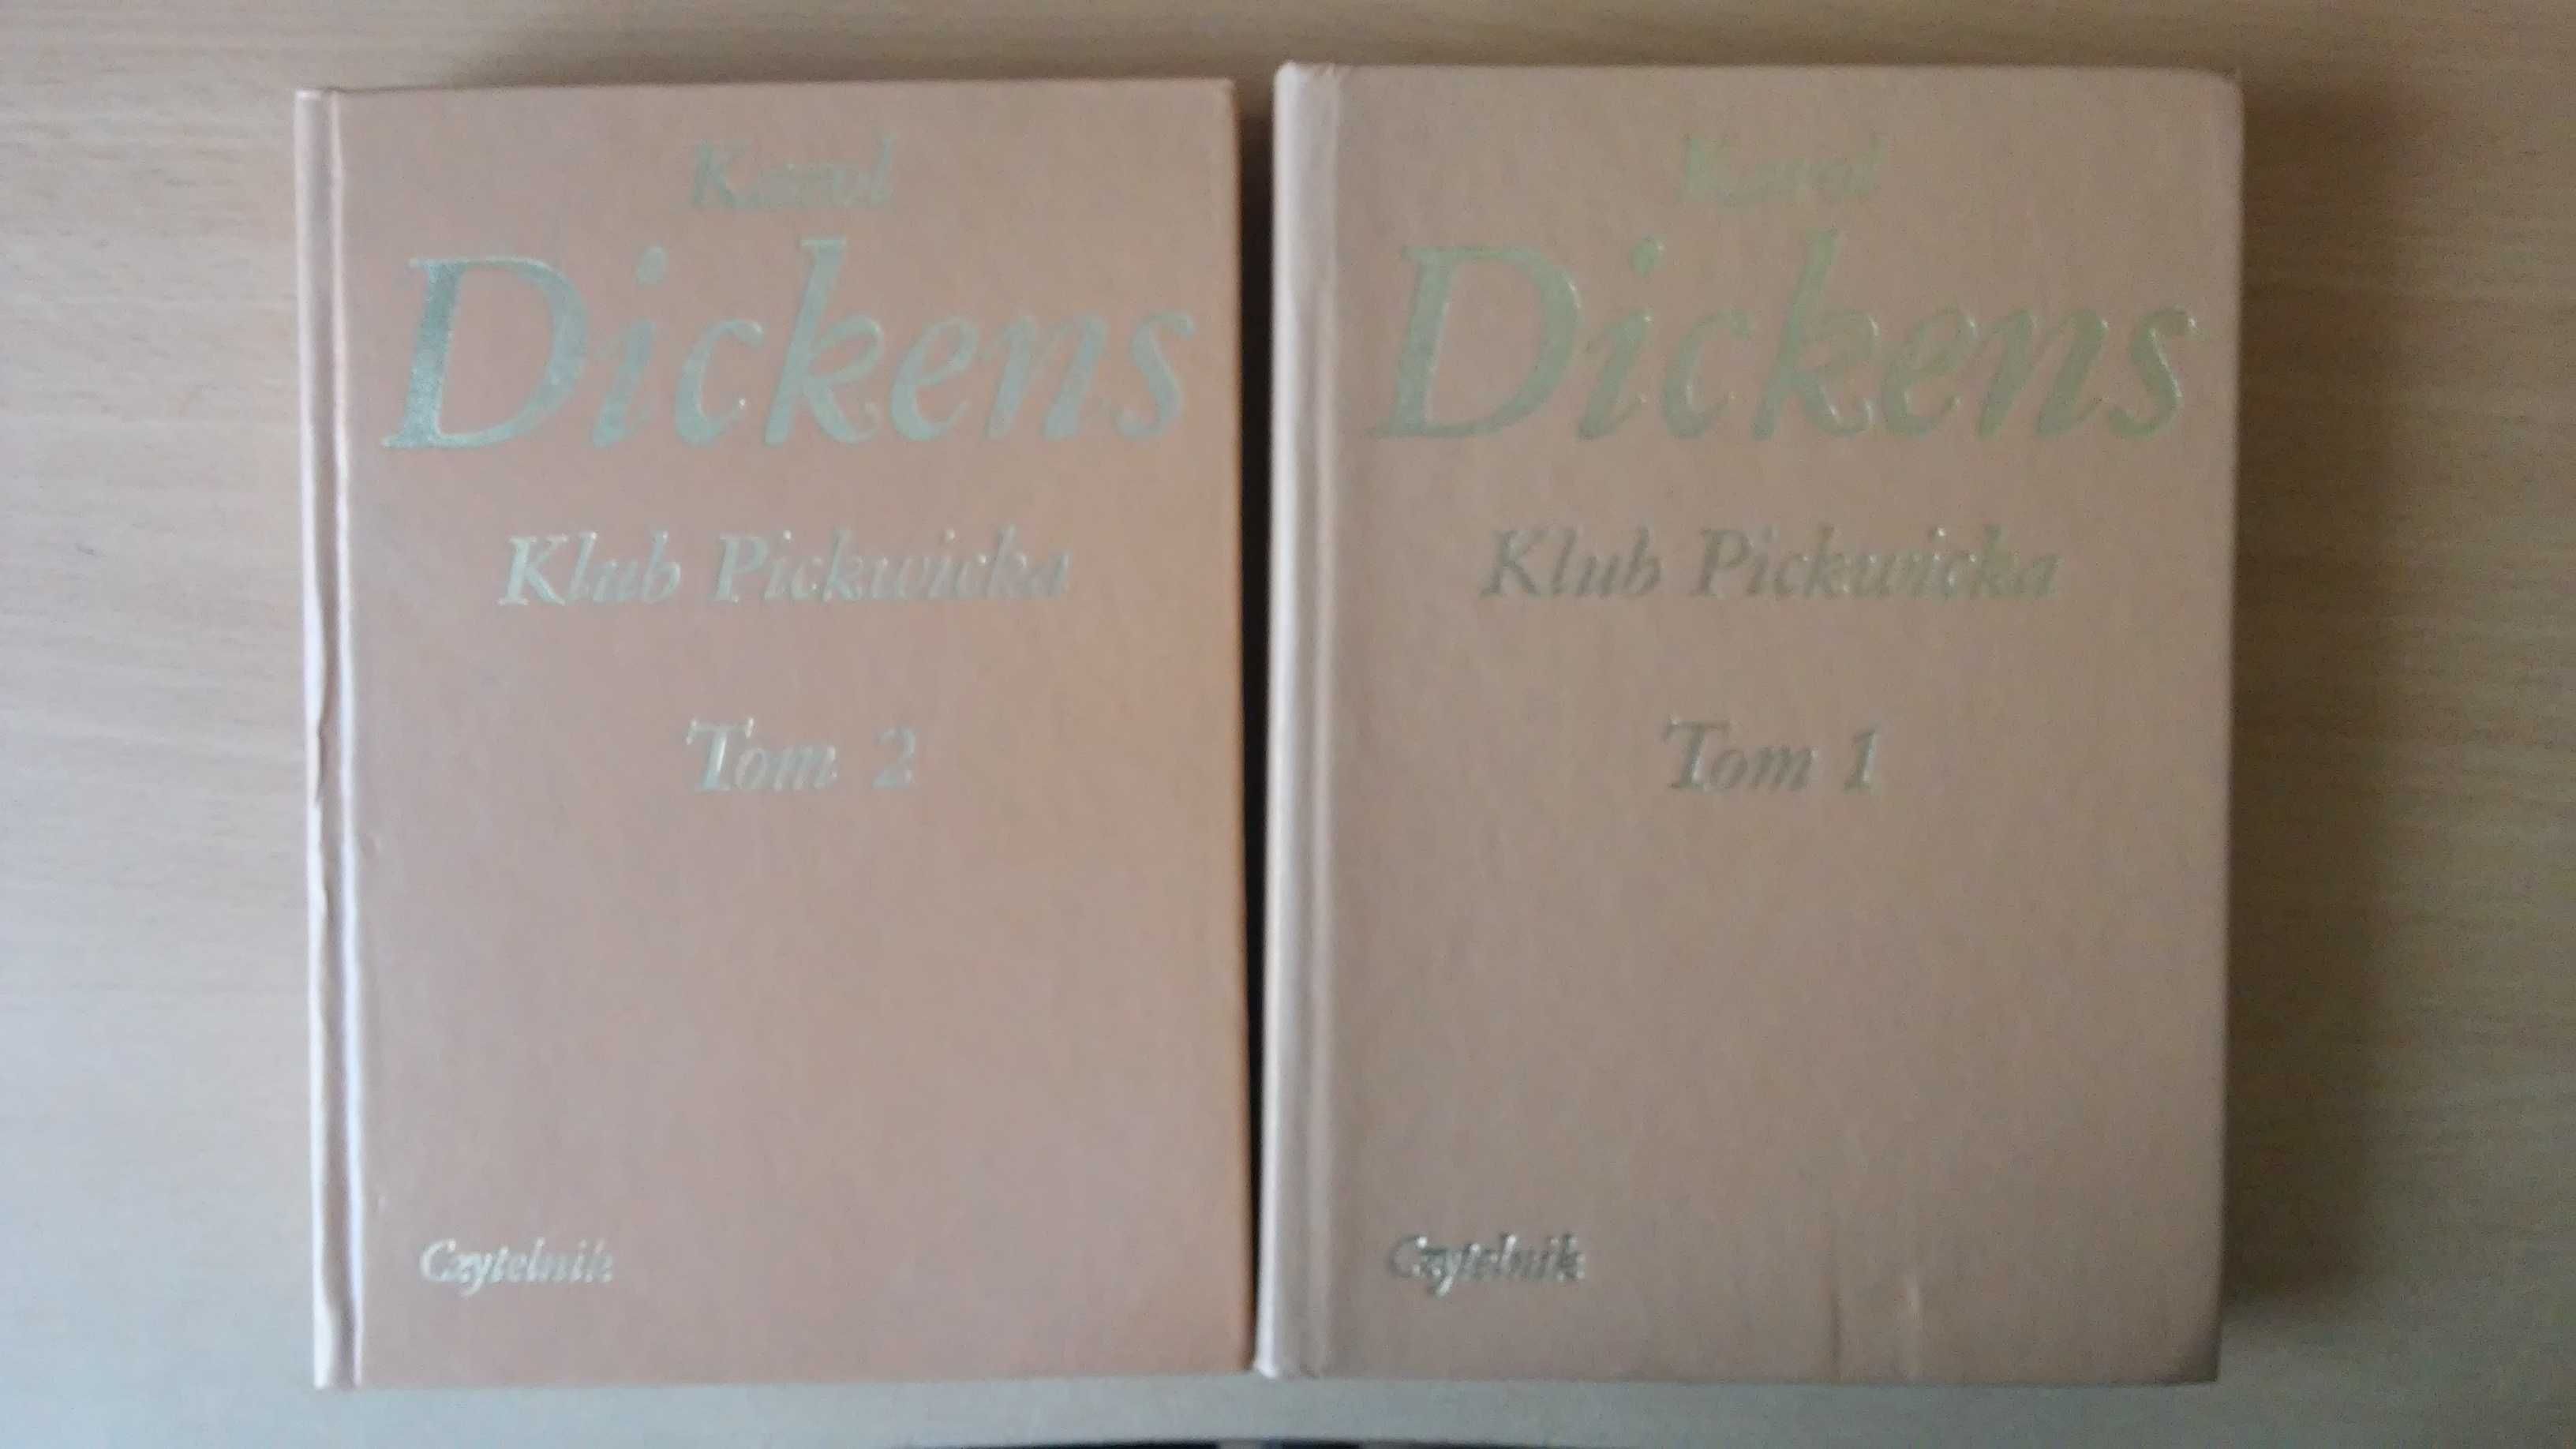 Klub Pickwicka, Karol Dickens